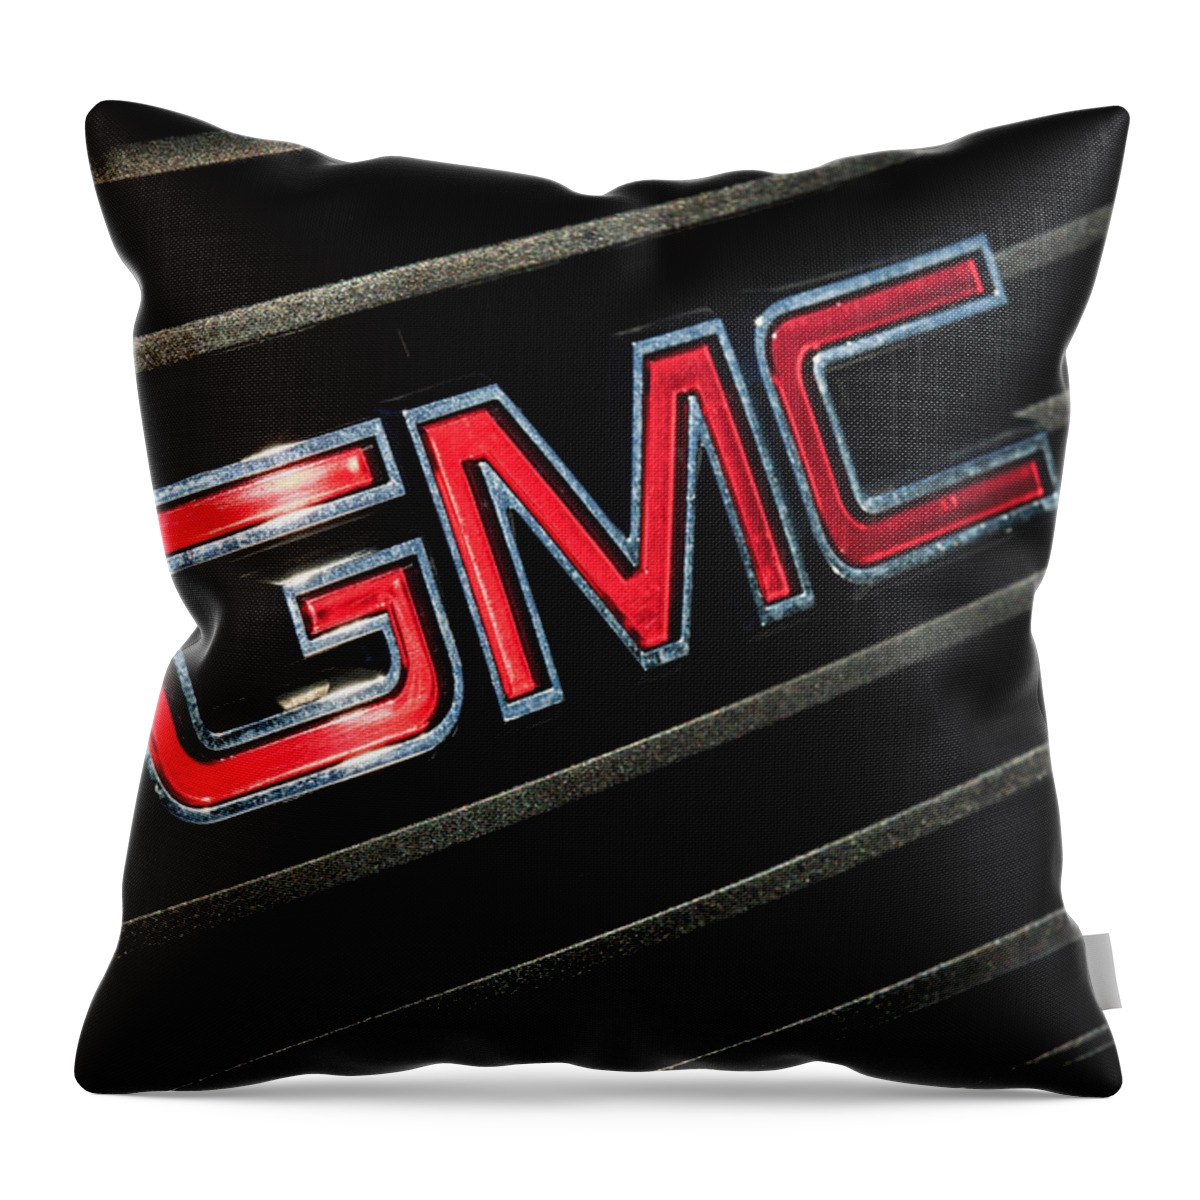 Gmc Emblem Throw Pillow featuring the photograph GMC Emblem - 1634c by Jill Reger